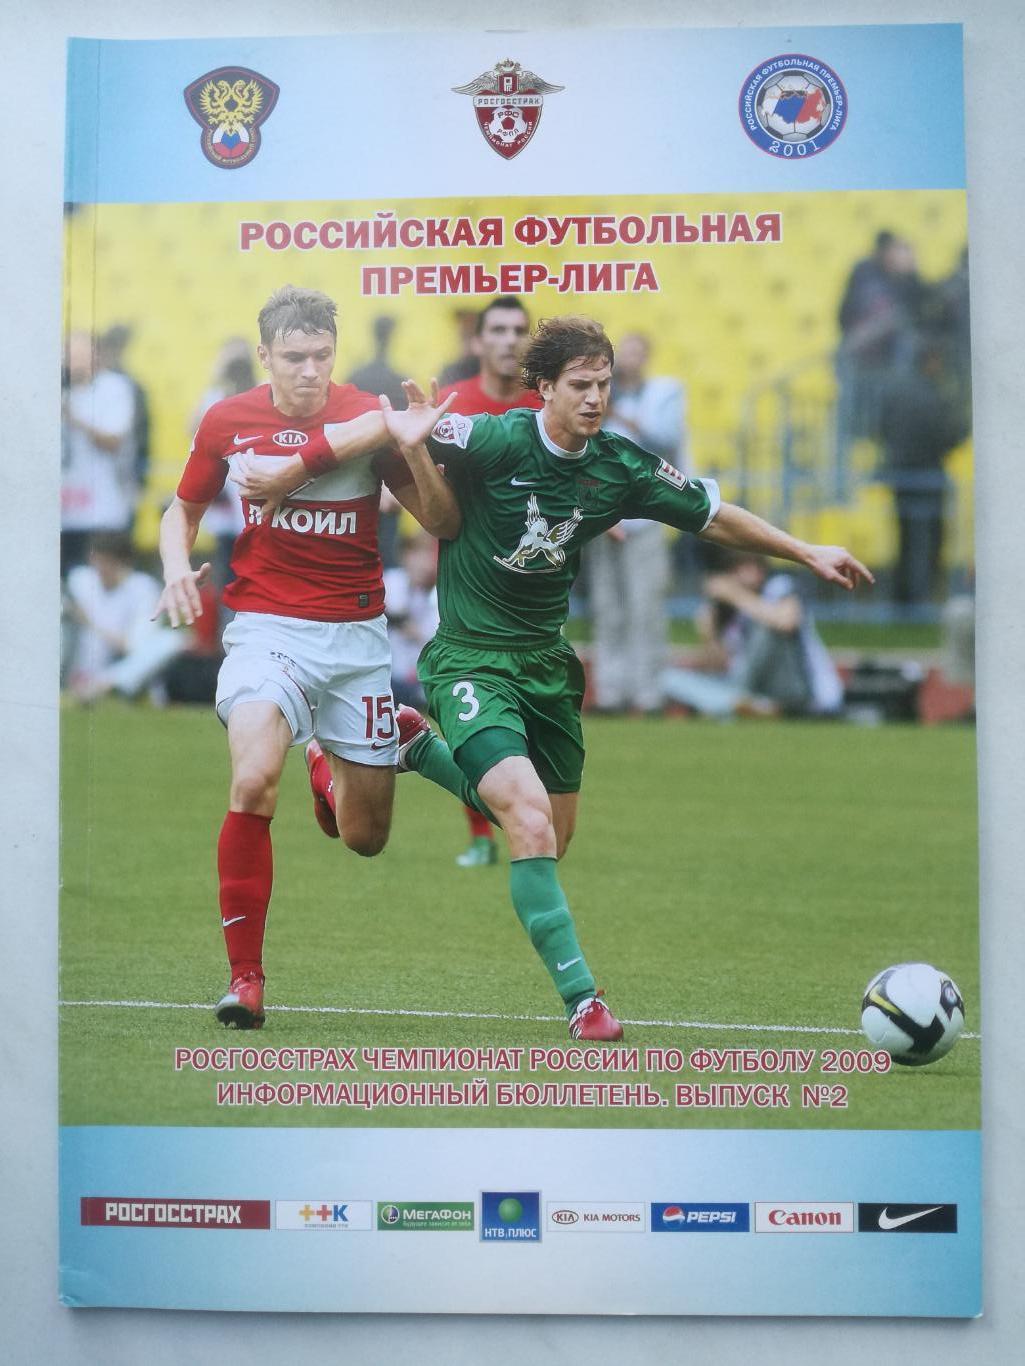 Российская футбольная премьер-лига (РФПЛ) 2009